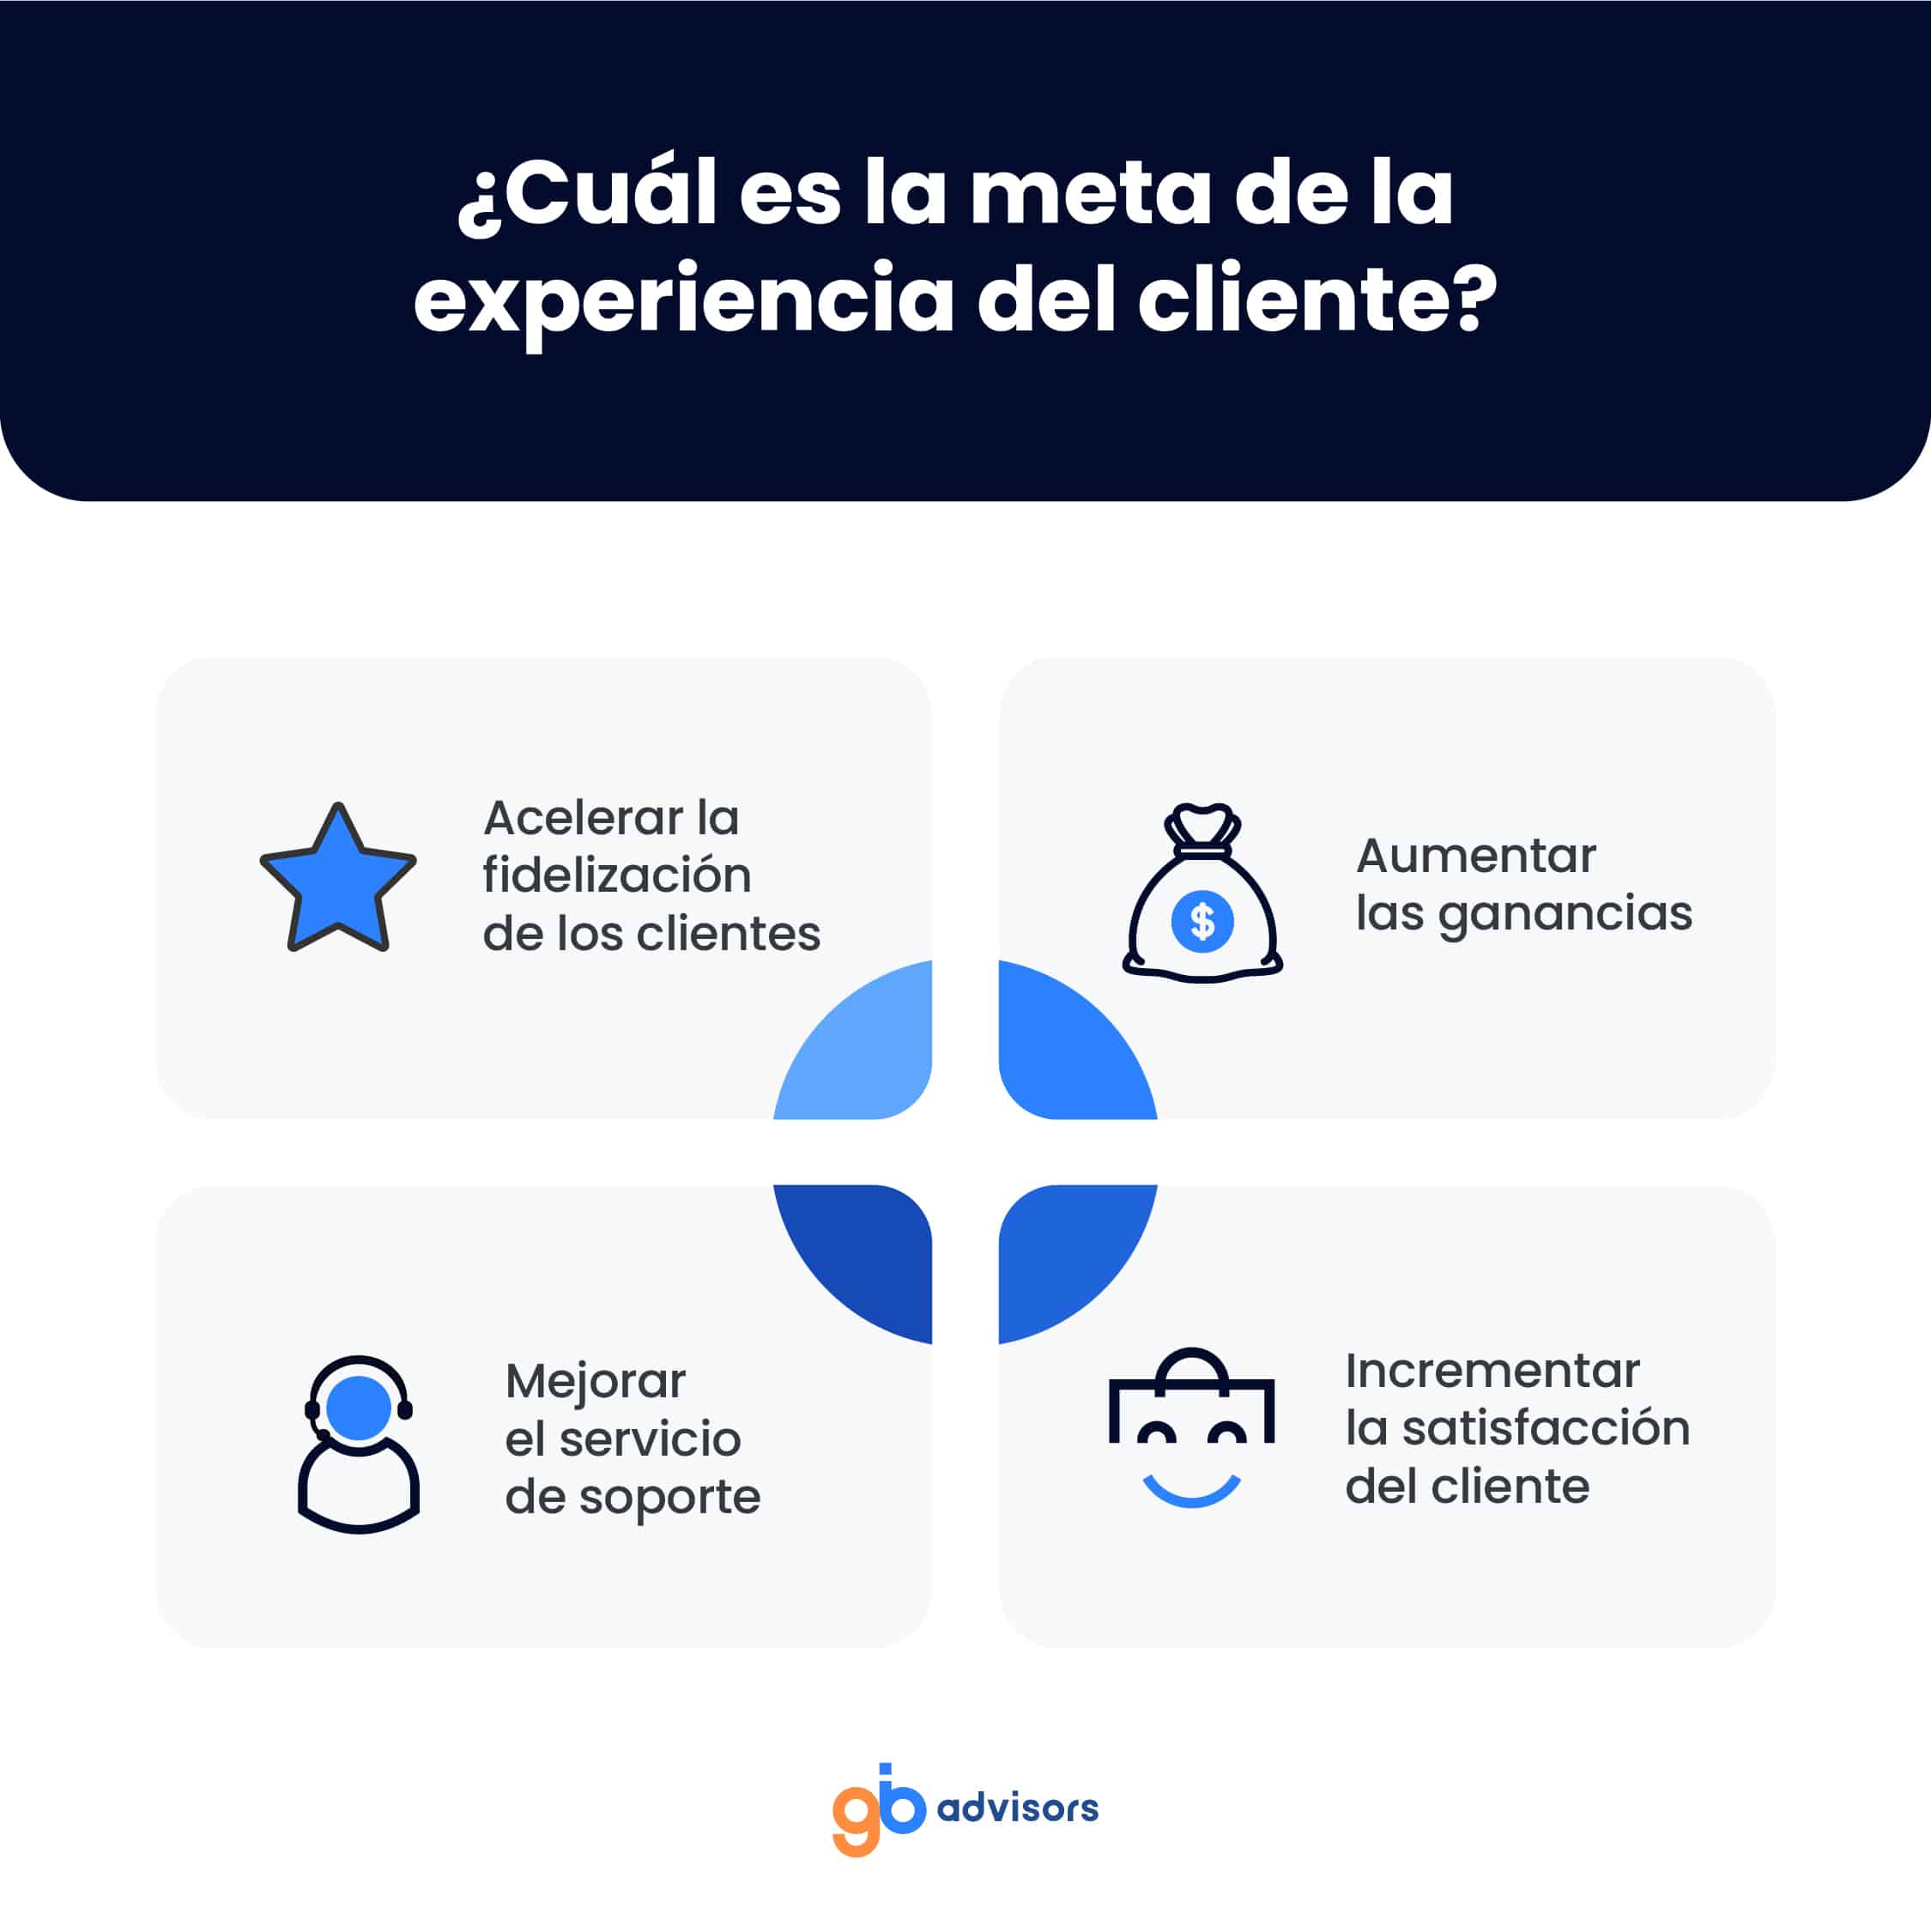 La meta de la experiencia del cliente